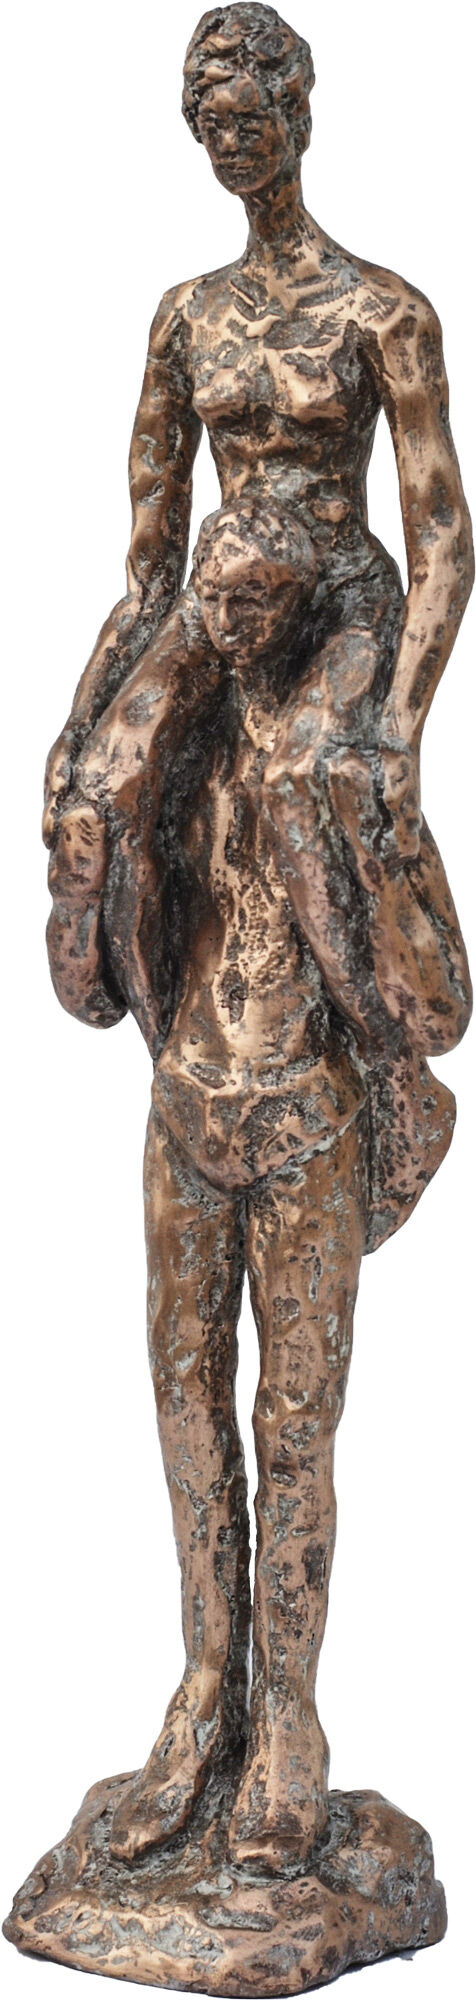 Sculptuur "Piggyback" (2017), brons von Dagmar Vogt